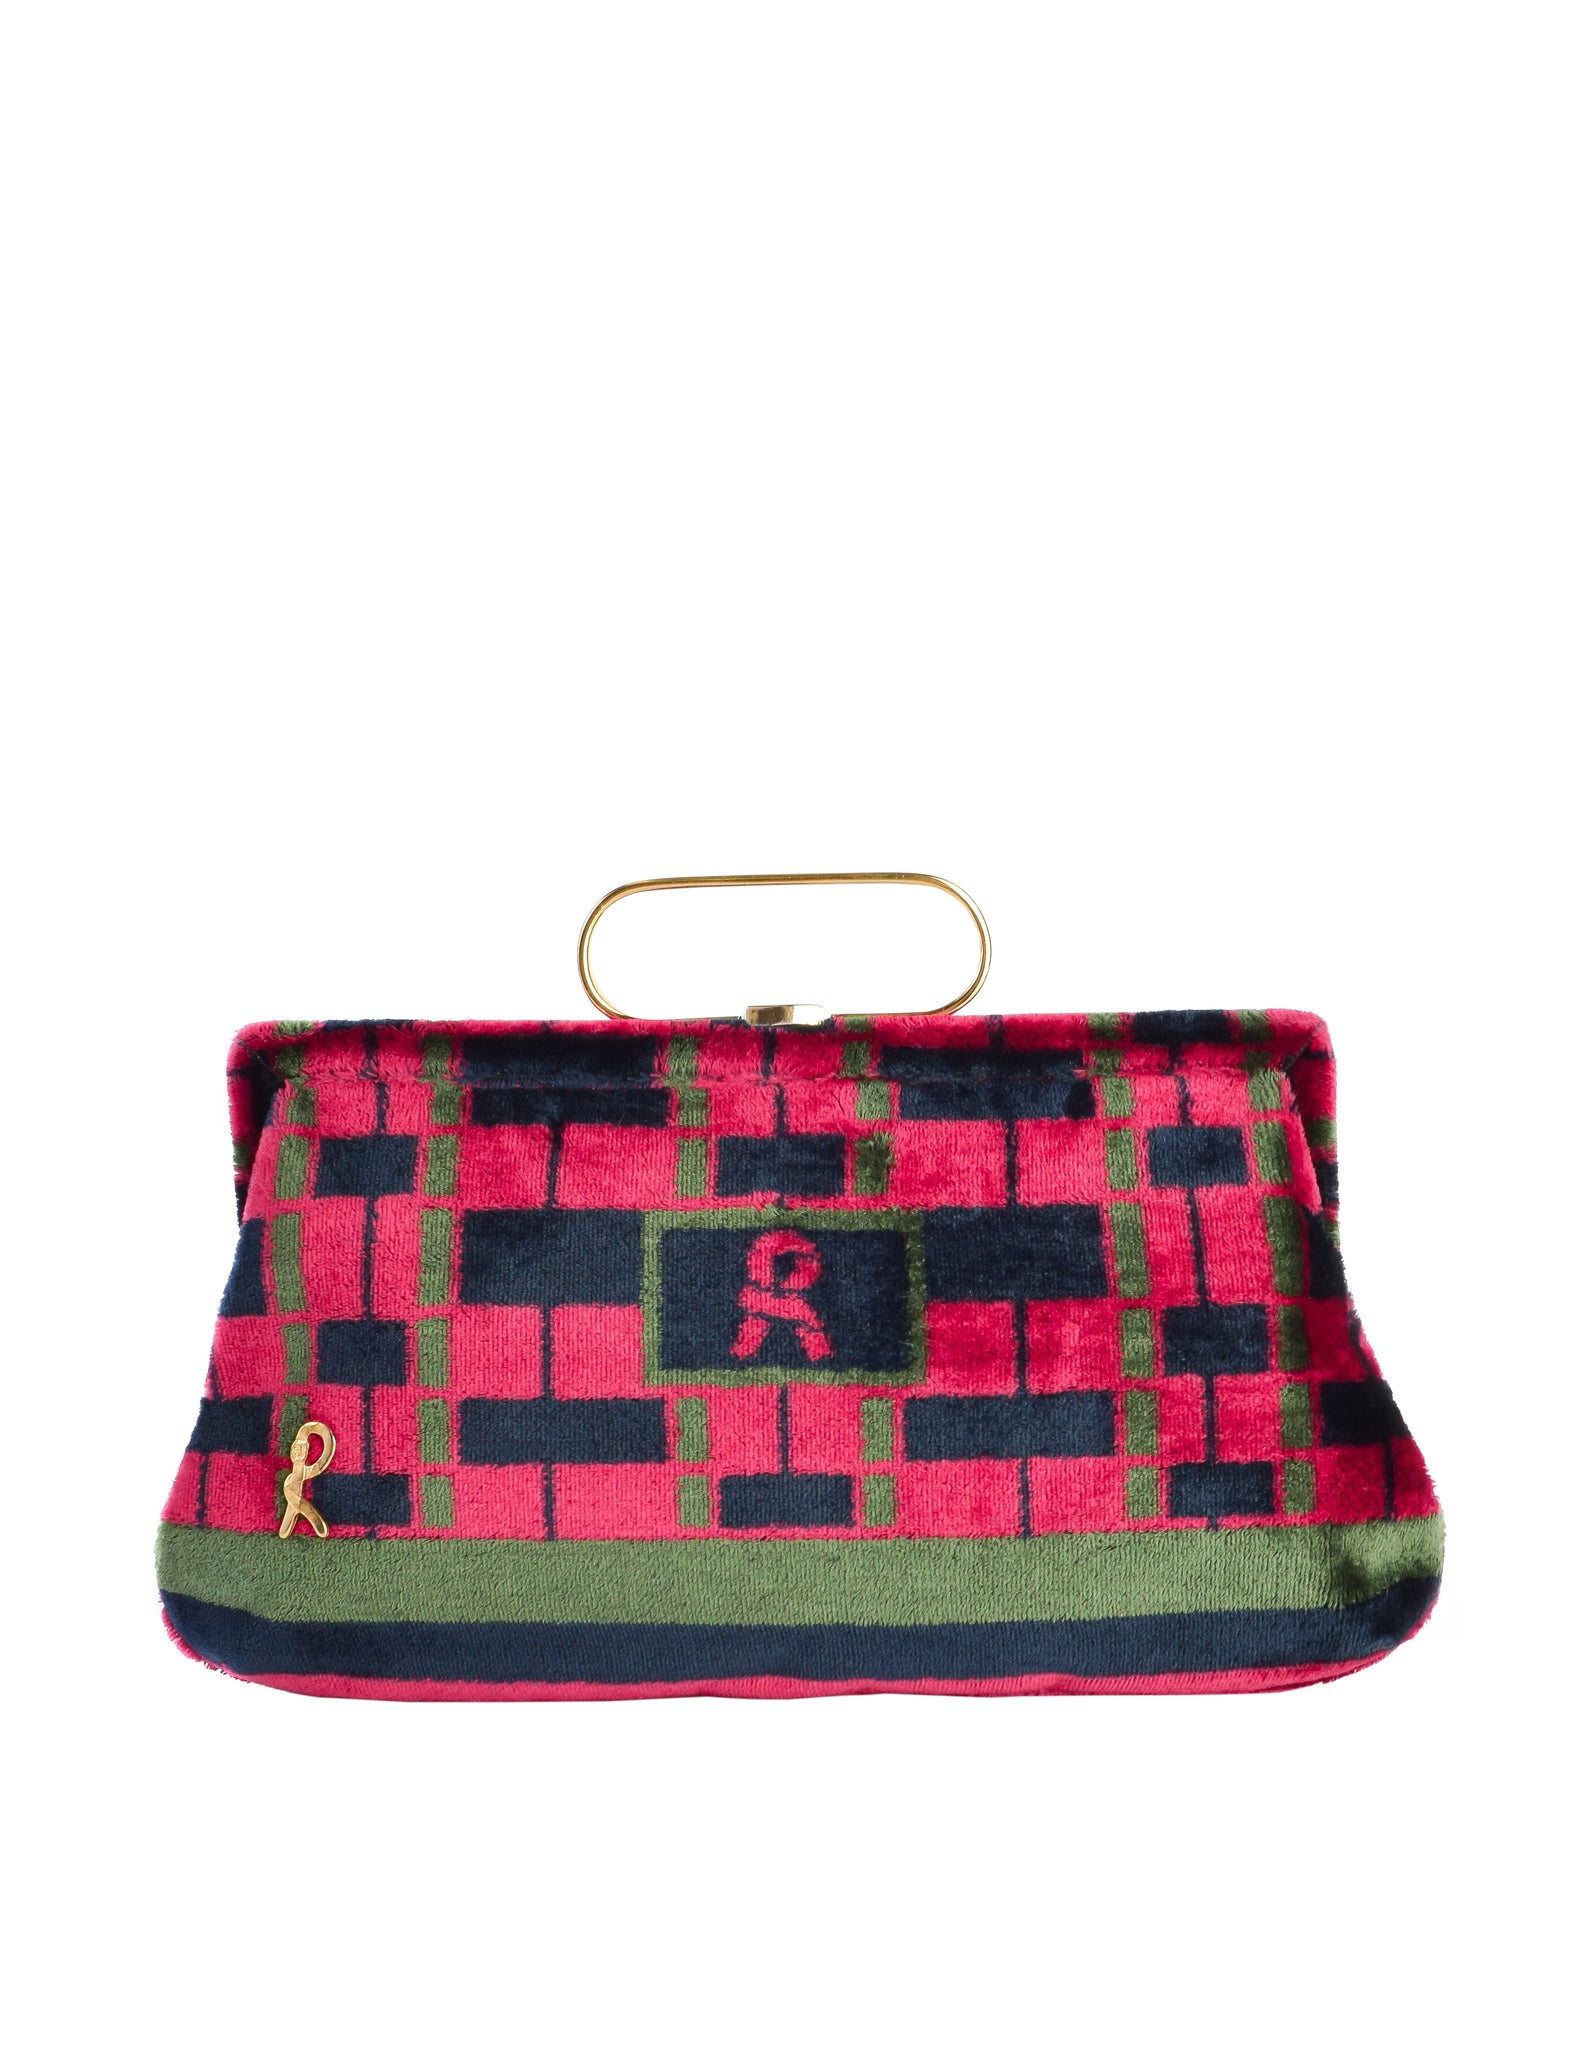 Roberta di Camerino Vintage 1970s Red Green Blue Patterned Velvet Handbag